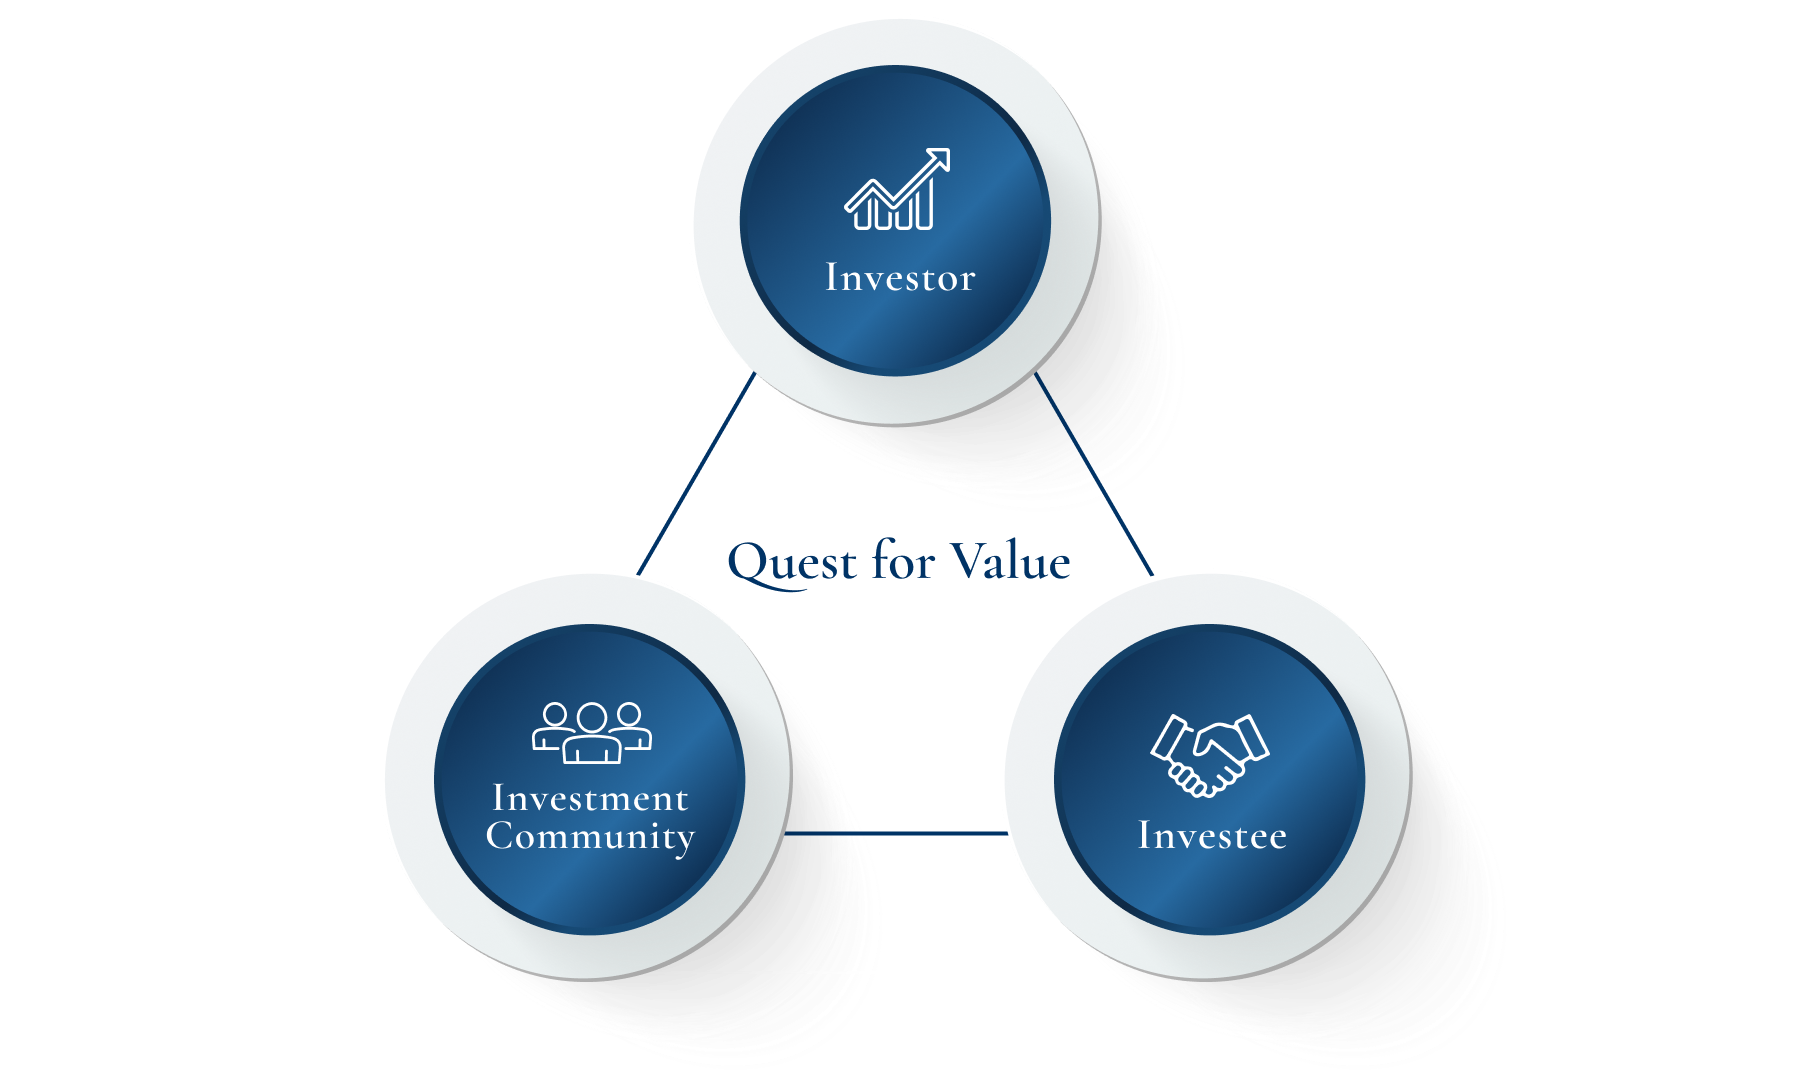 投資家への価値提供、投資先への価値提供、投資コミュニティへの人財開発の3つの関係を表した図です。